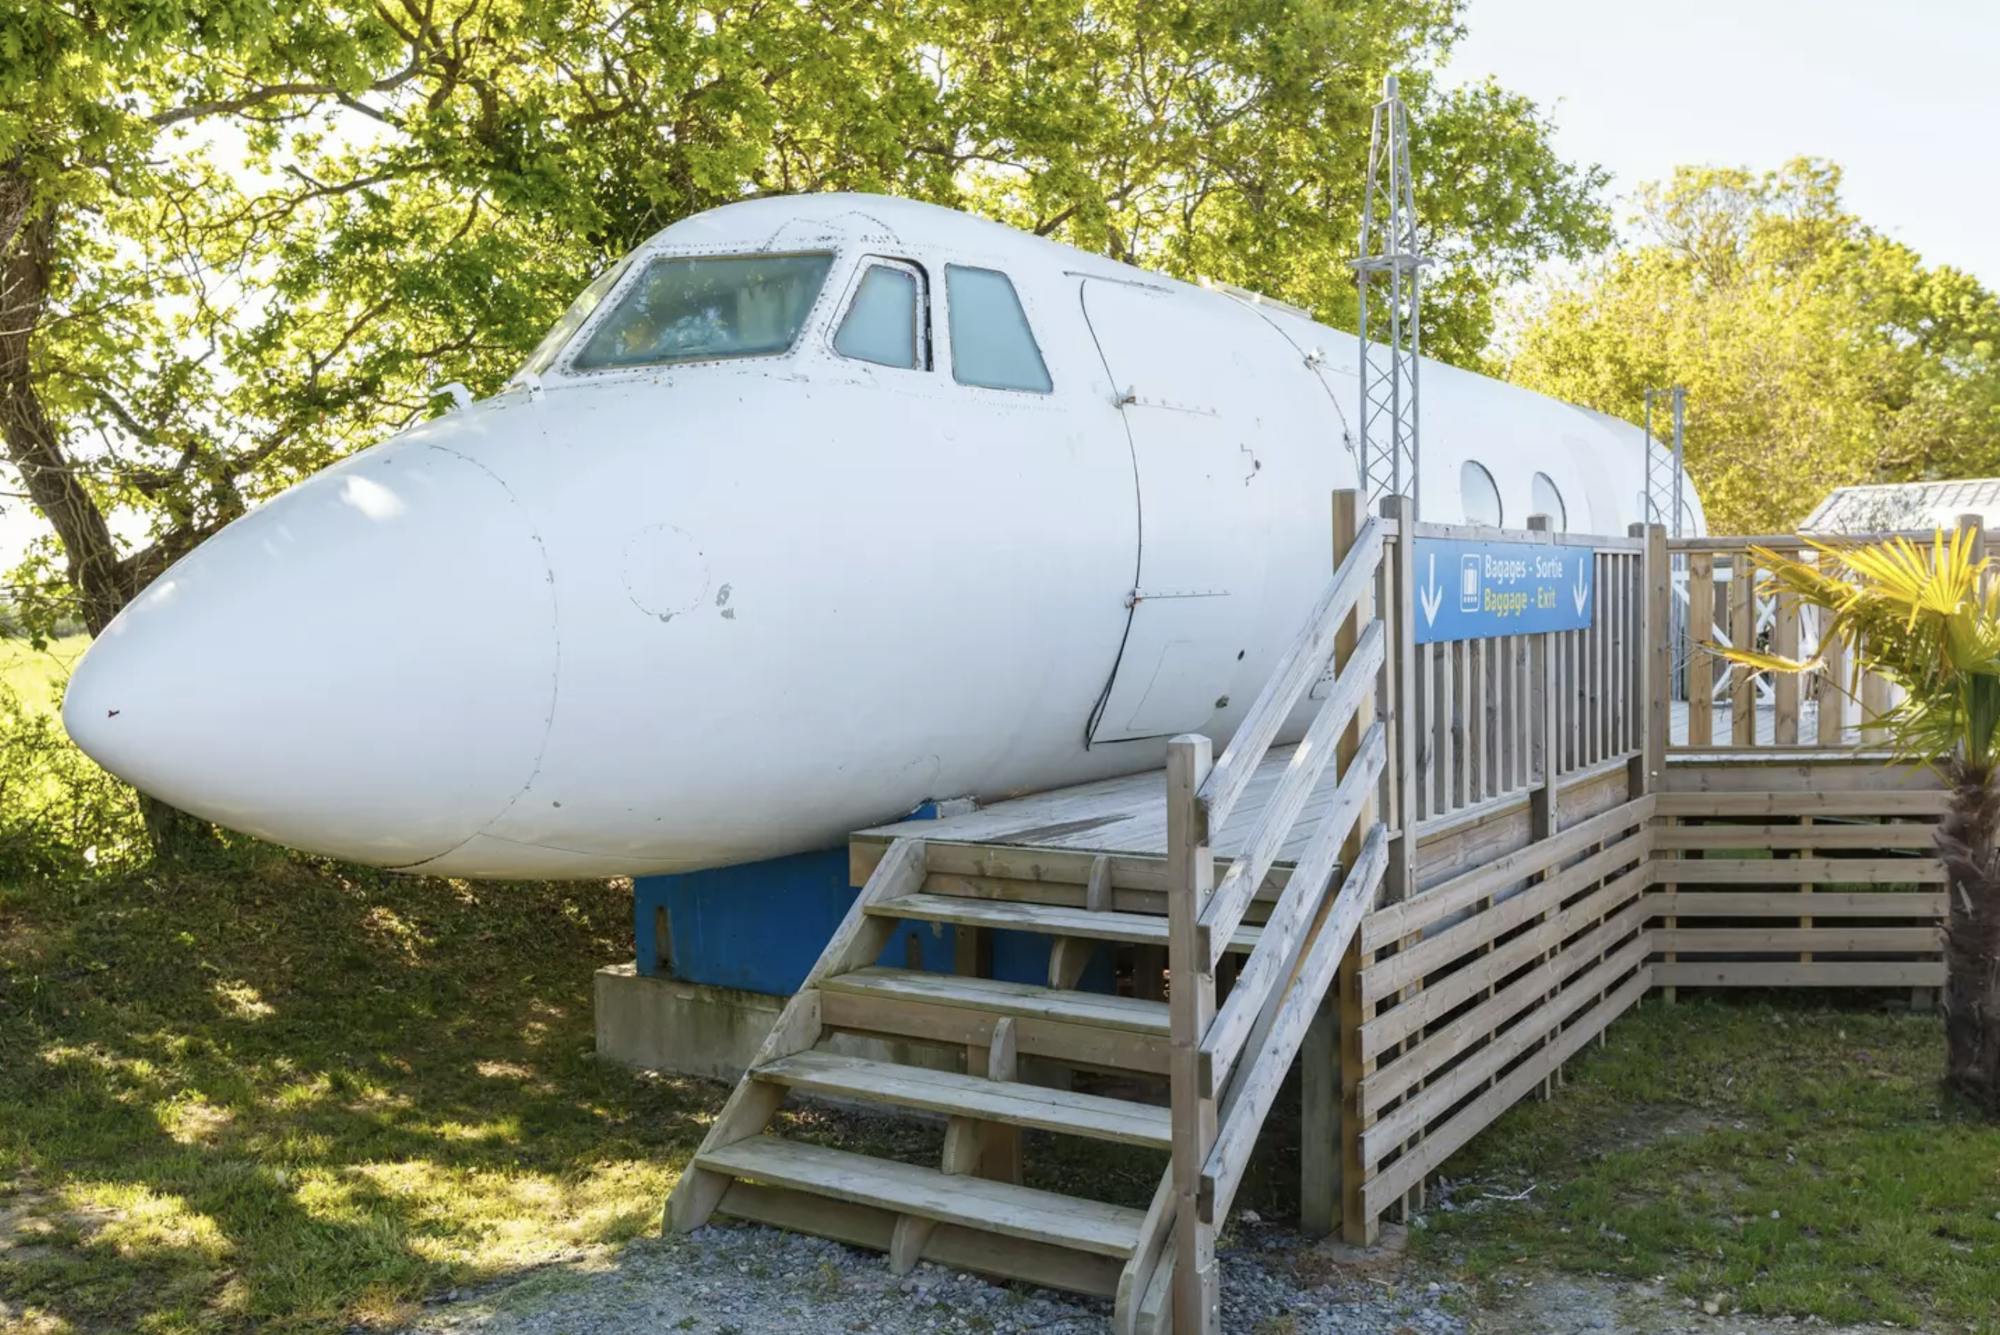 Wejście do samolotu-Airbnb prowadzi przez drewniane schody. Wokół samolotu znajdują się drzewa i pole.